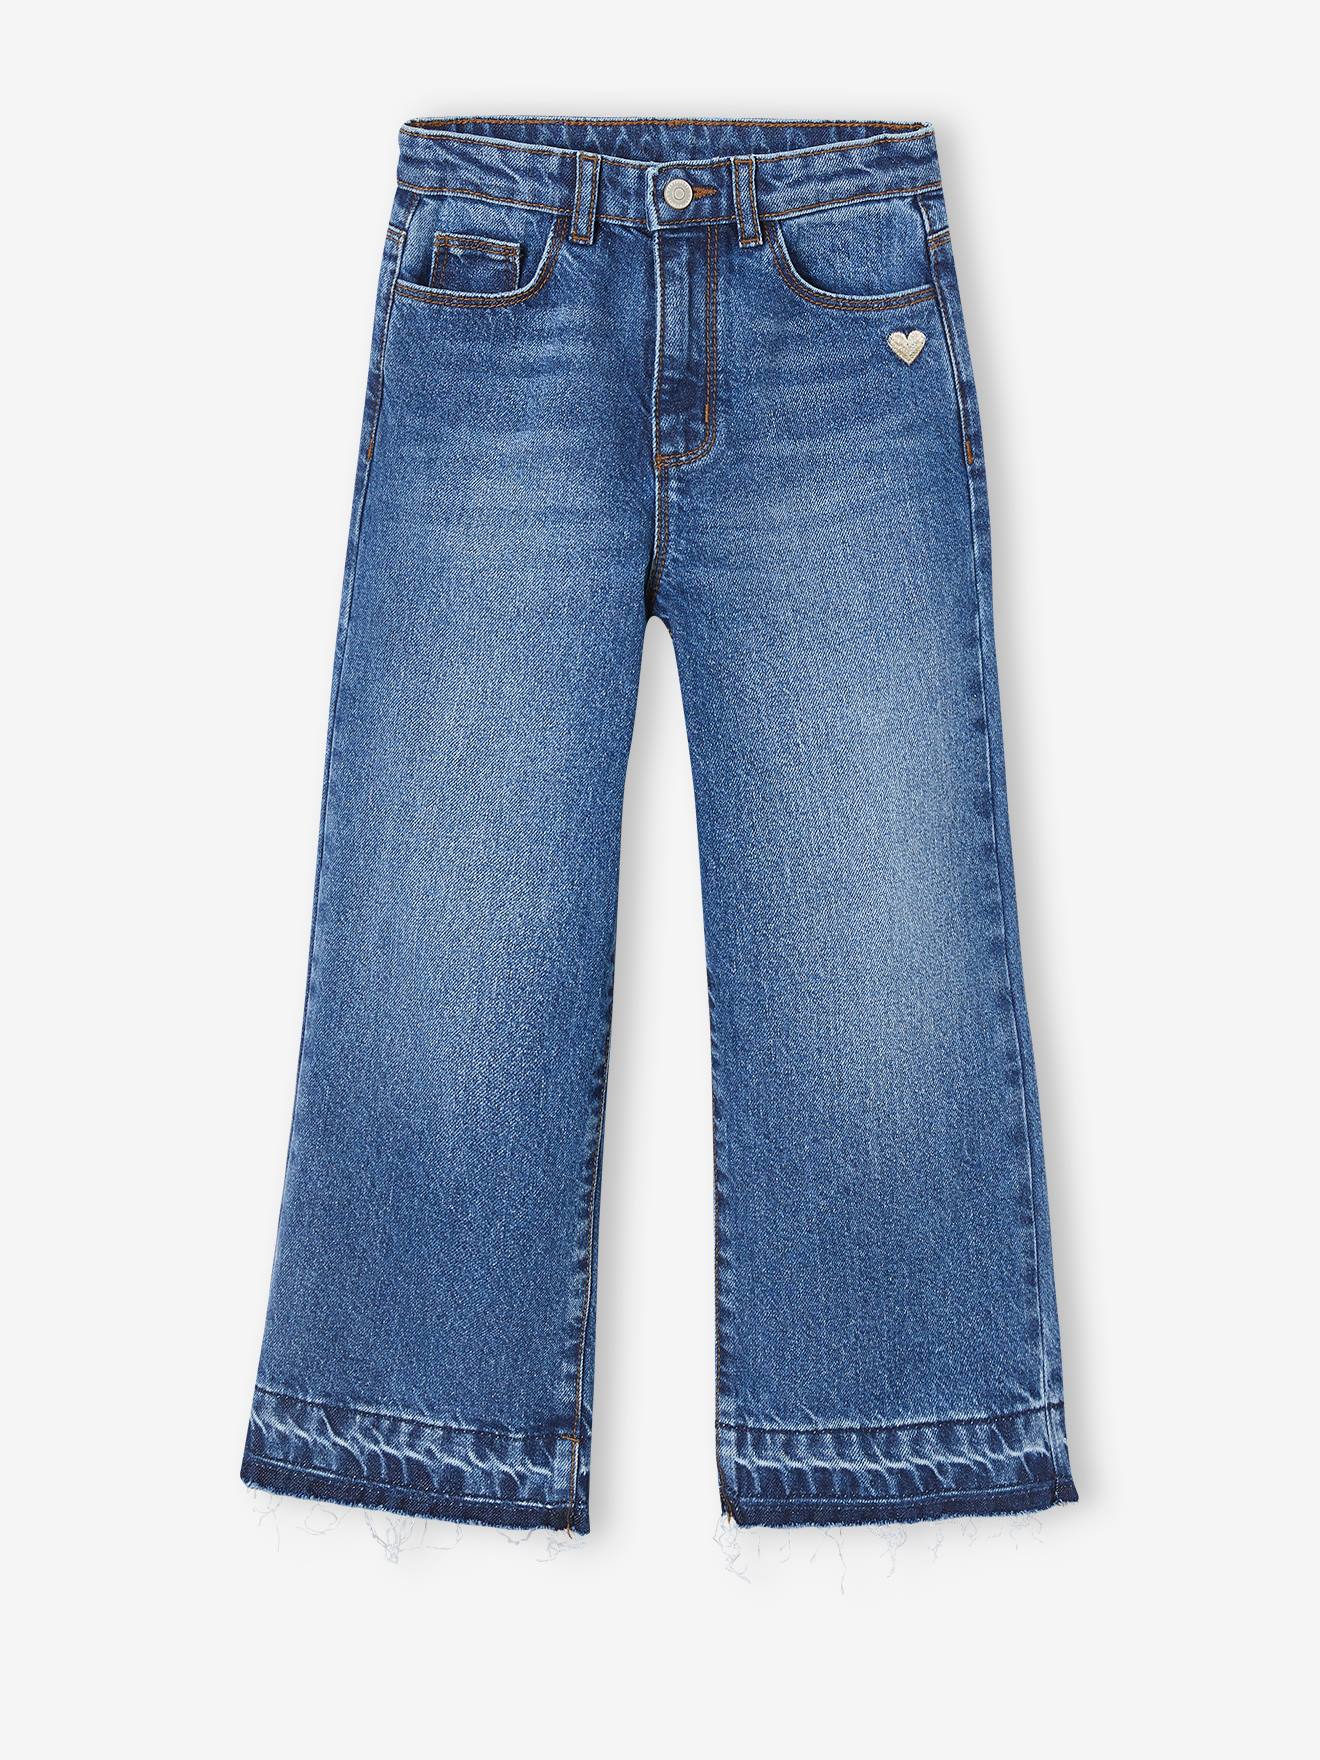 Wide-Leg Jeans, Frayed Hems, for Girls denim blue